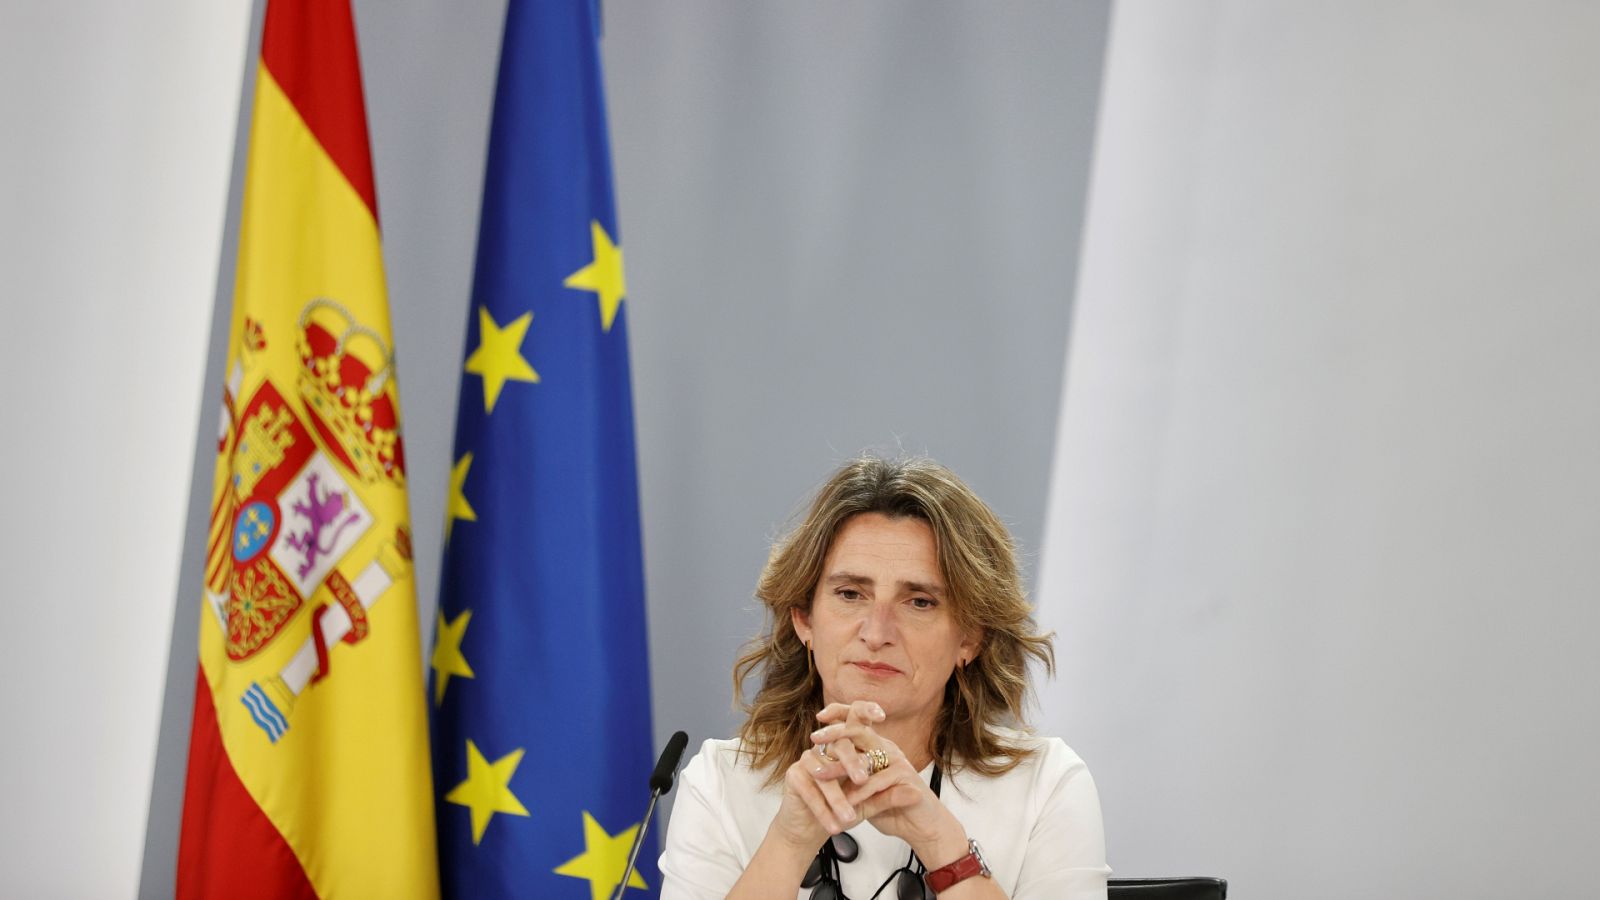 Boletines RNE - España rechaza calificar como energías "verdes" la nuclear y el gas como propone Bruselas - Escuchar ahora